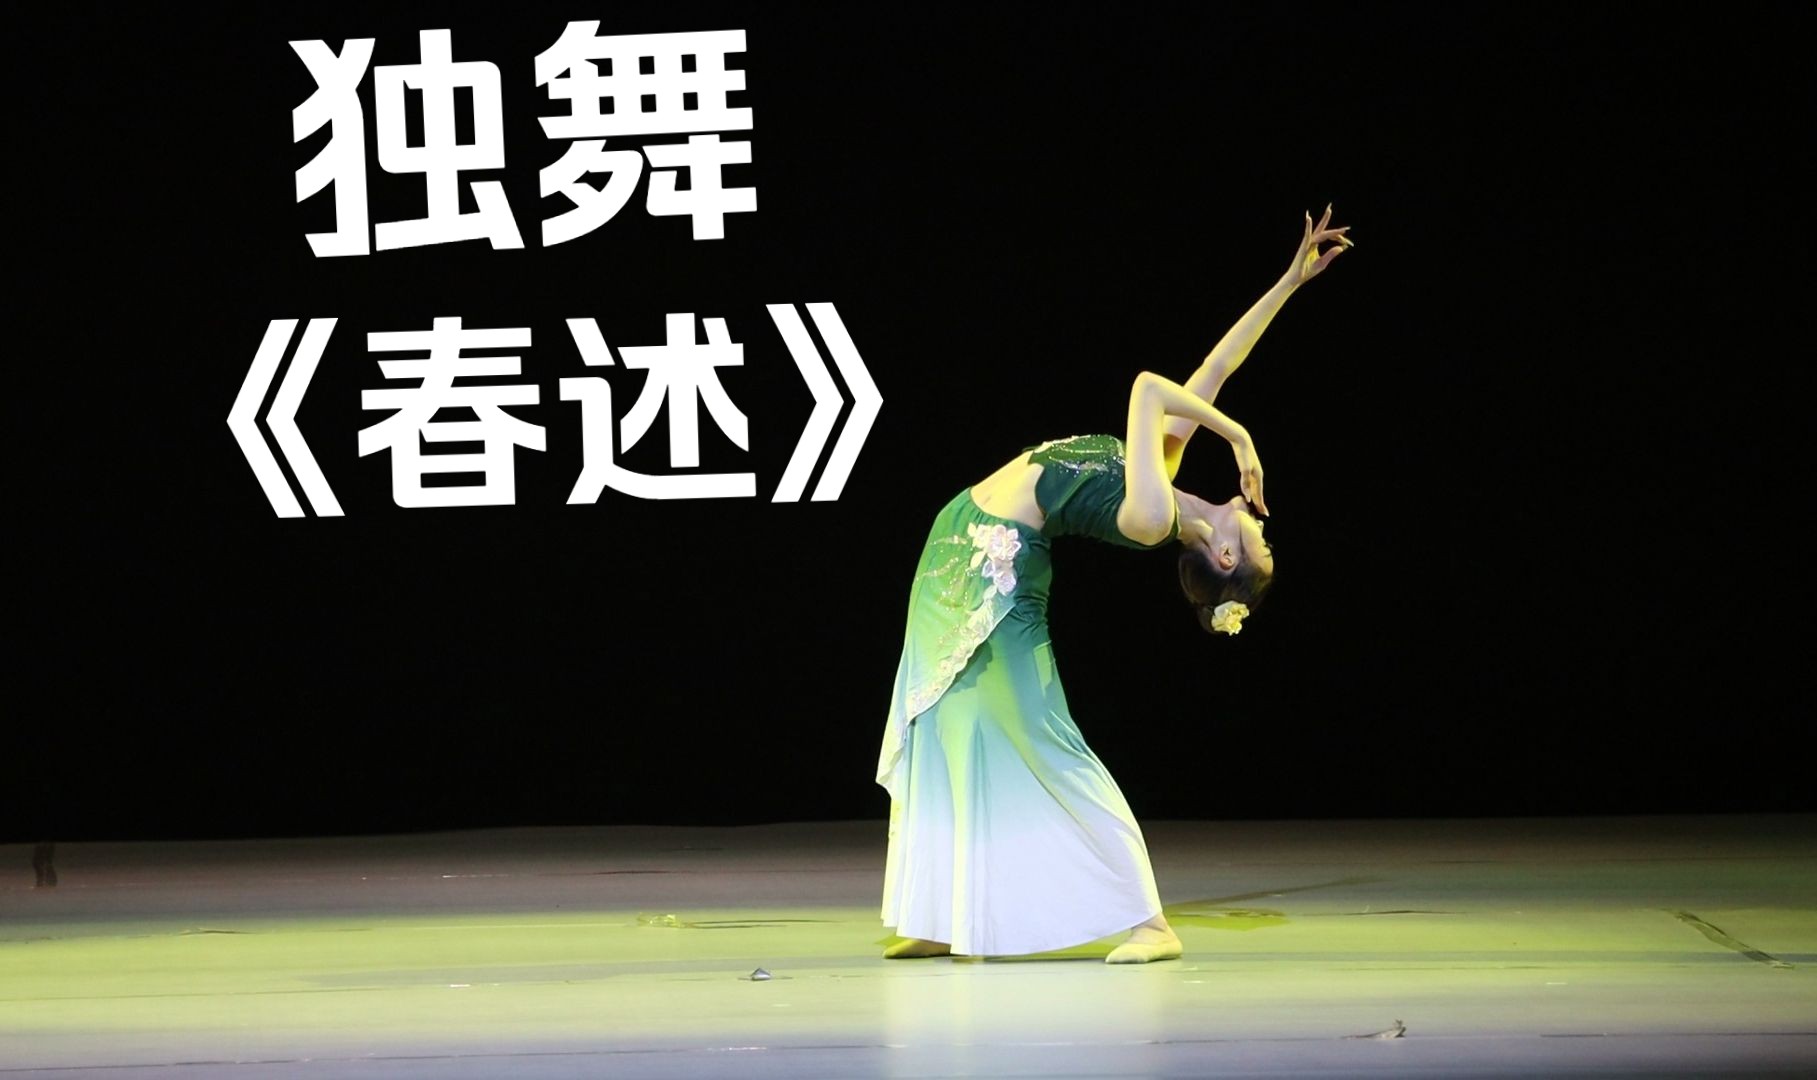 华中科技大学舞蹈团专场展演“向阳而舞”——独舞《春述》